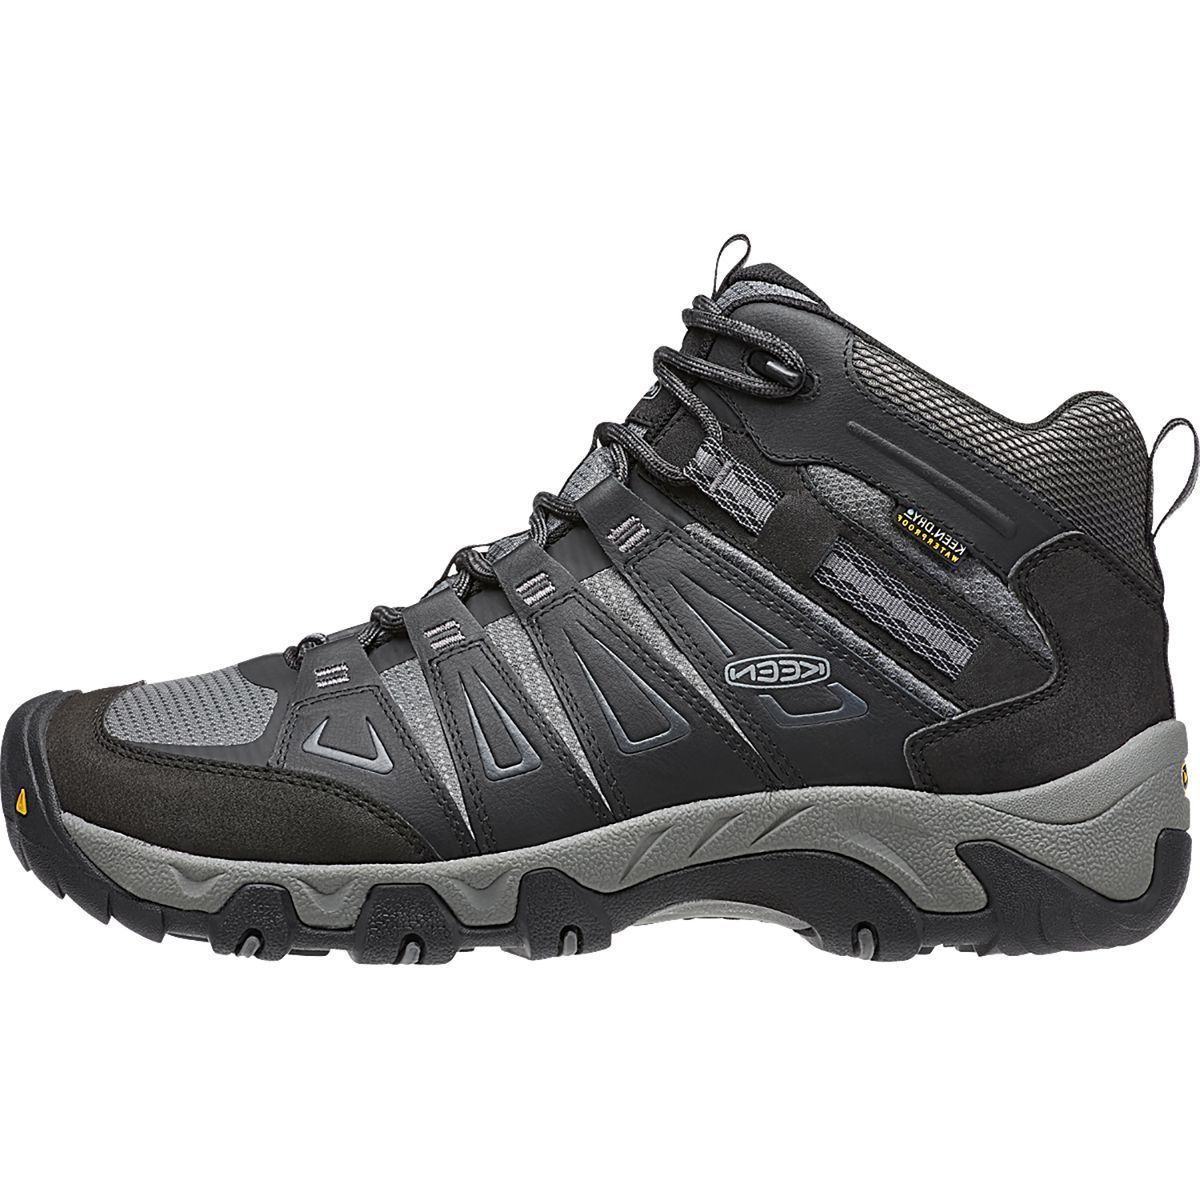 KEEN Oakridge Mid Waterproof Hiking Boot - Men's